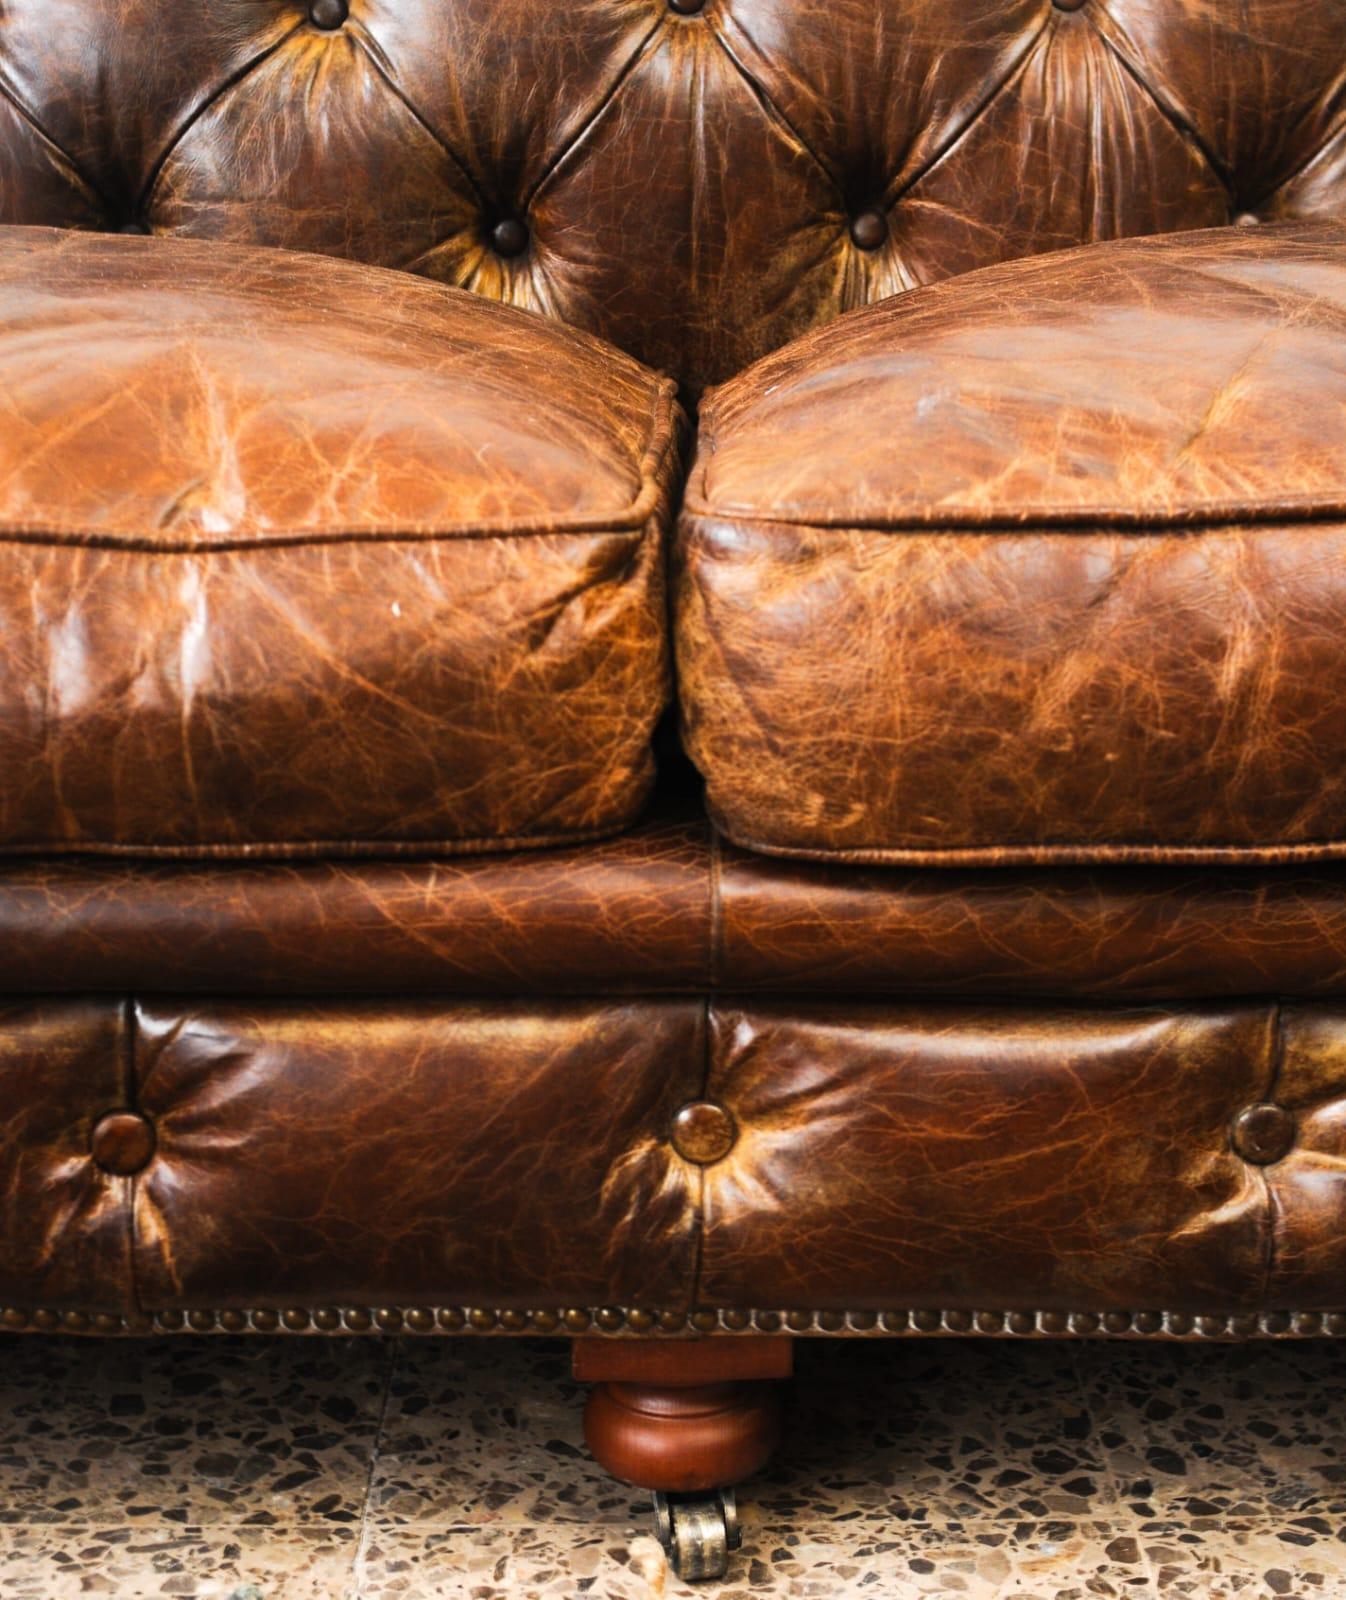 Vintage Large 4-Sitzer Chester Sofa circa 1970er Jahre
Bequem und in sehr gutem Zustand mit seiner schönen gealterten Lederpatina.
Einzigartige Beine aus Holz und Messing mit Rädern.

APPROX. ABMESSUNGEN:
Breite 250cm (98.43in.)
Tiefe 90cm